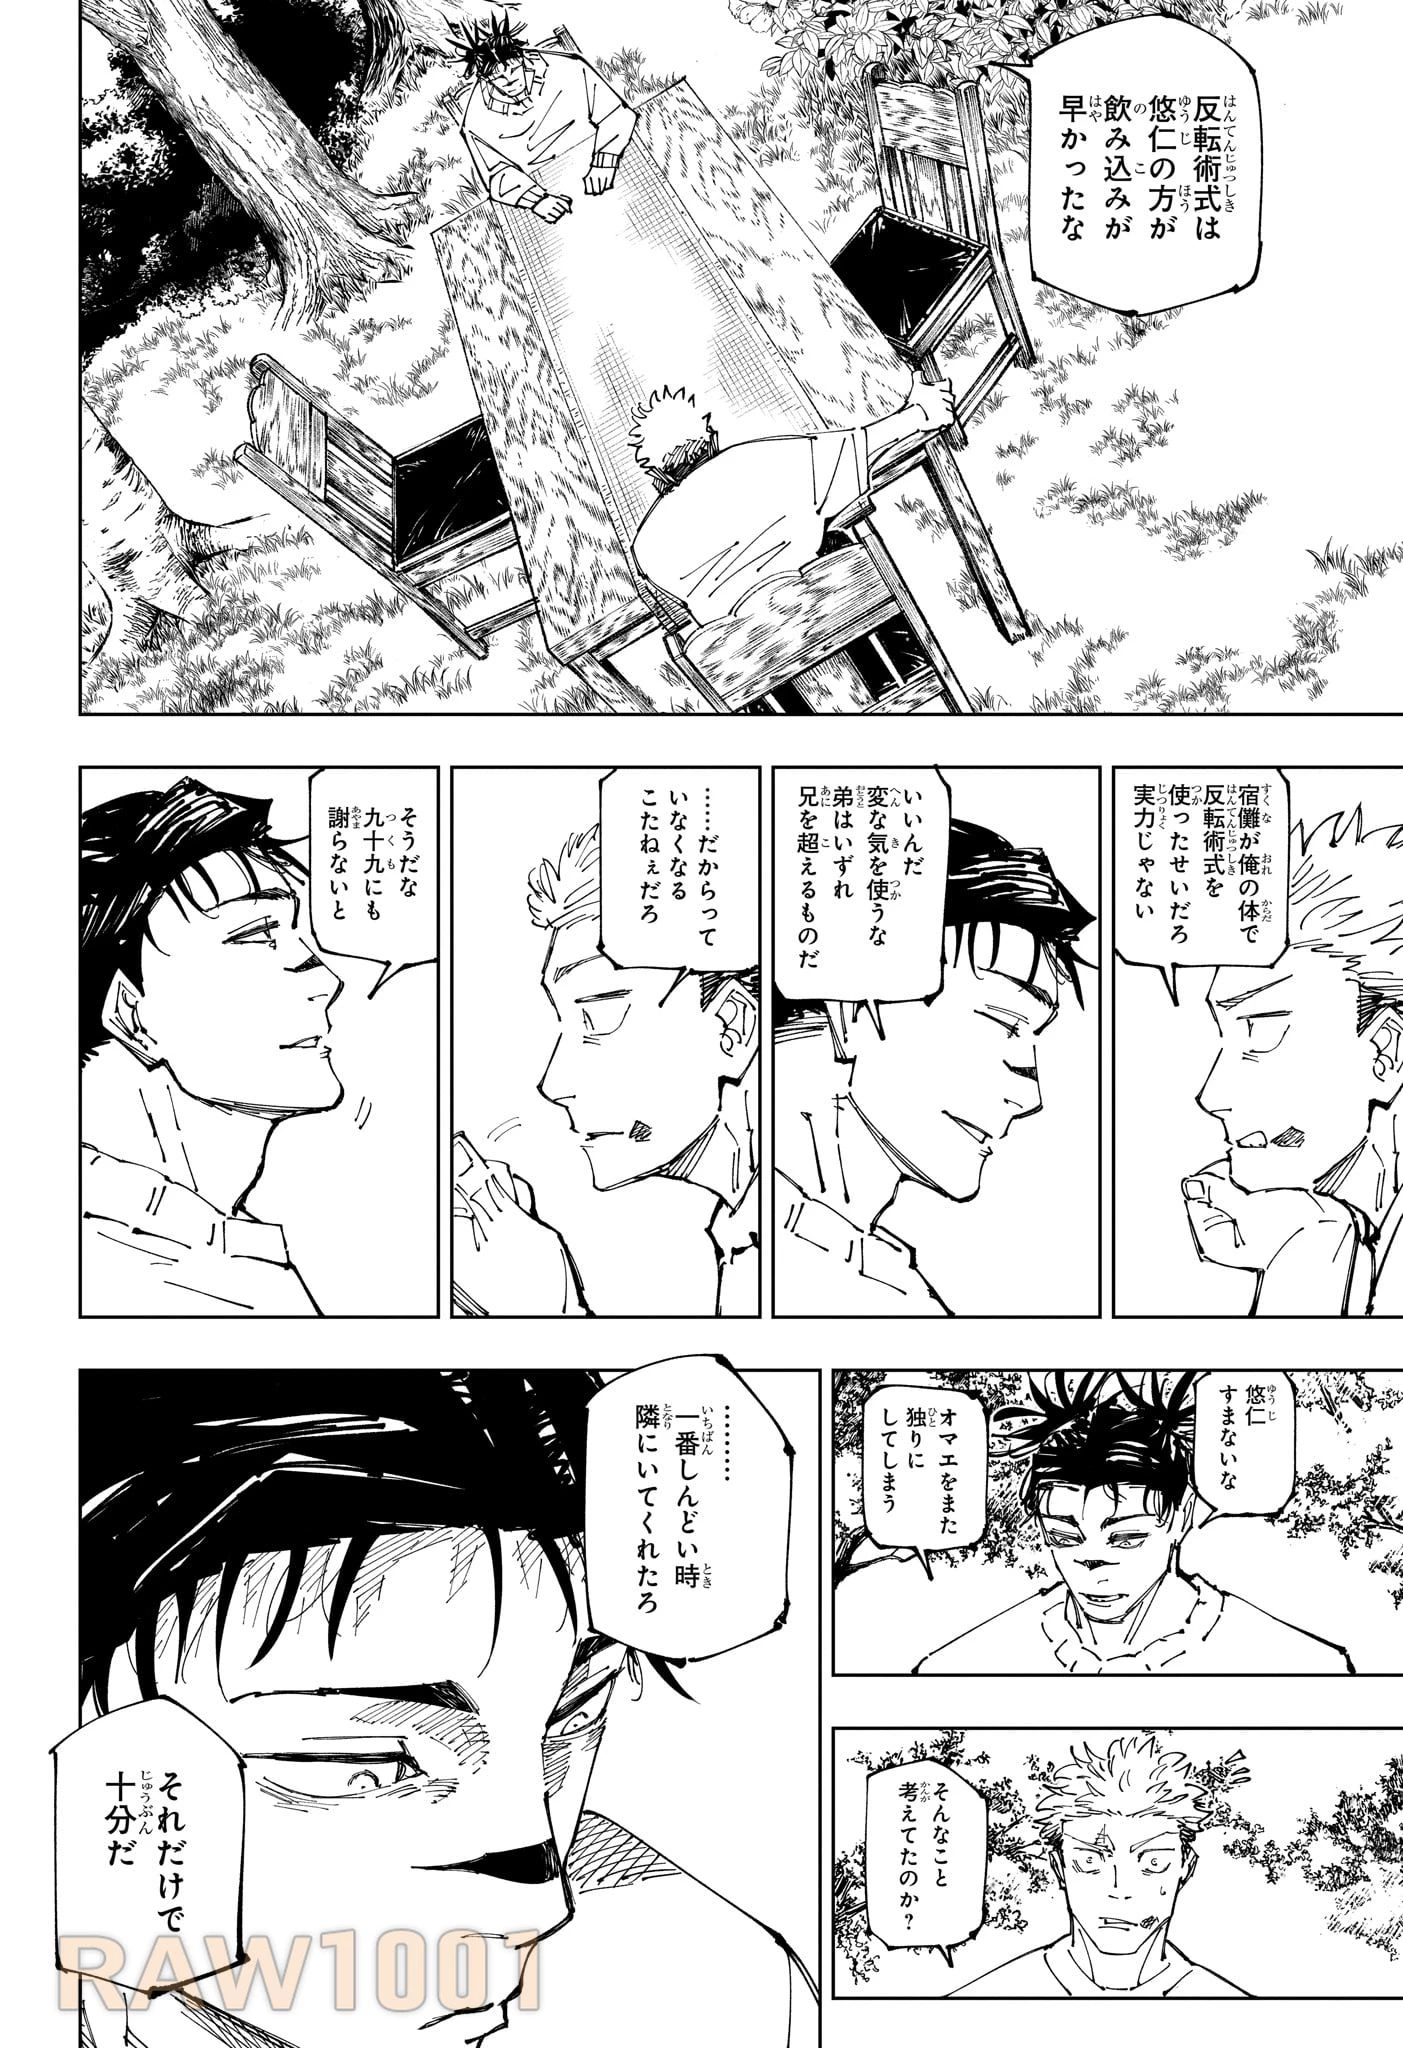 呪術廻戦 第259話 Raw - Mangakoma - 漫画koma - 漫画raw